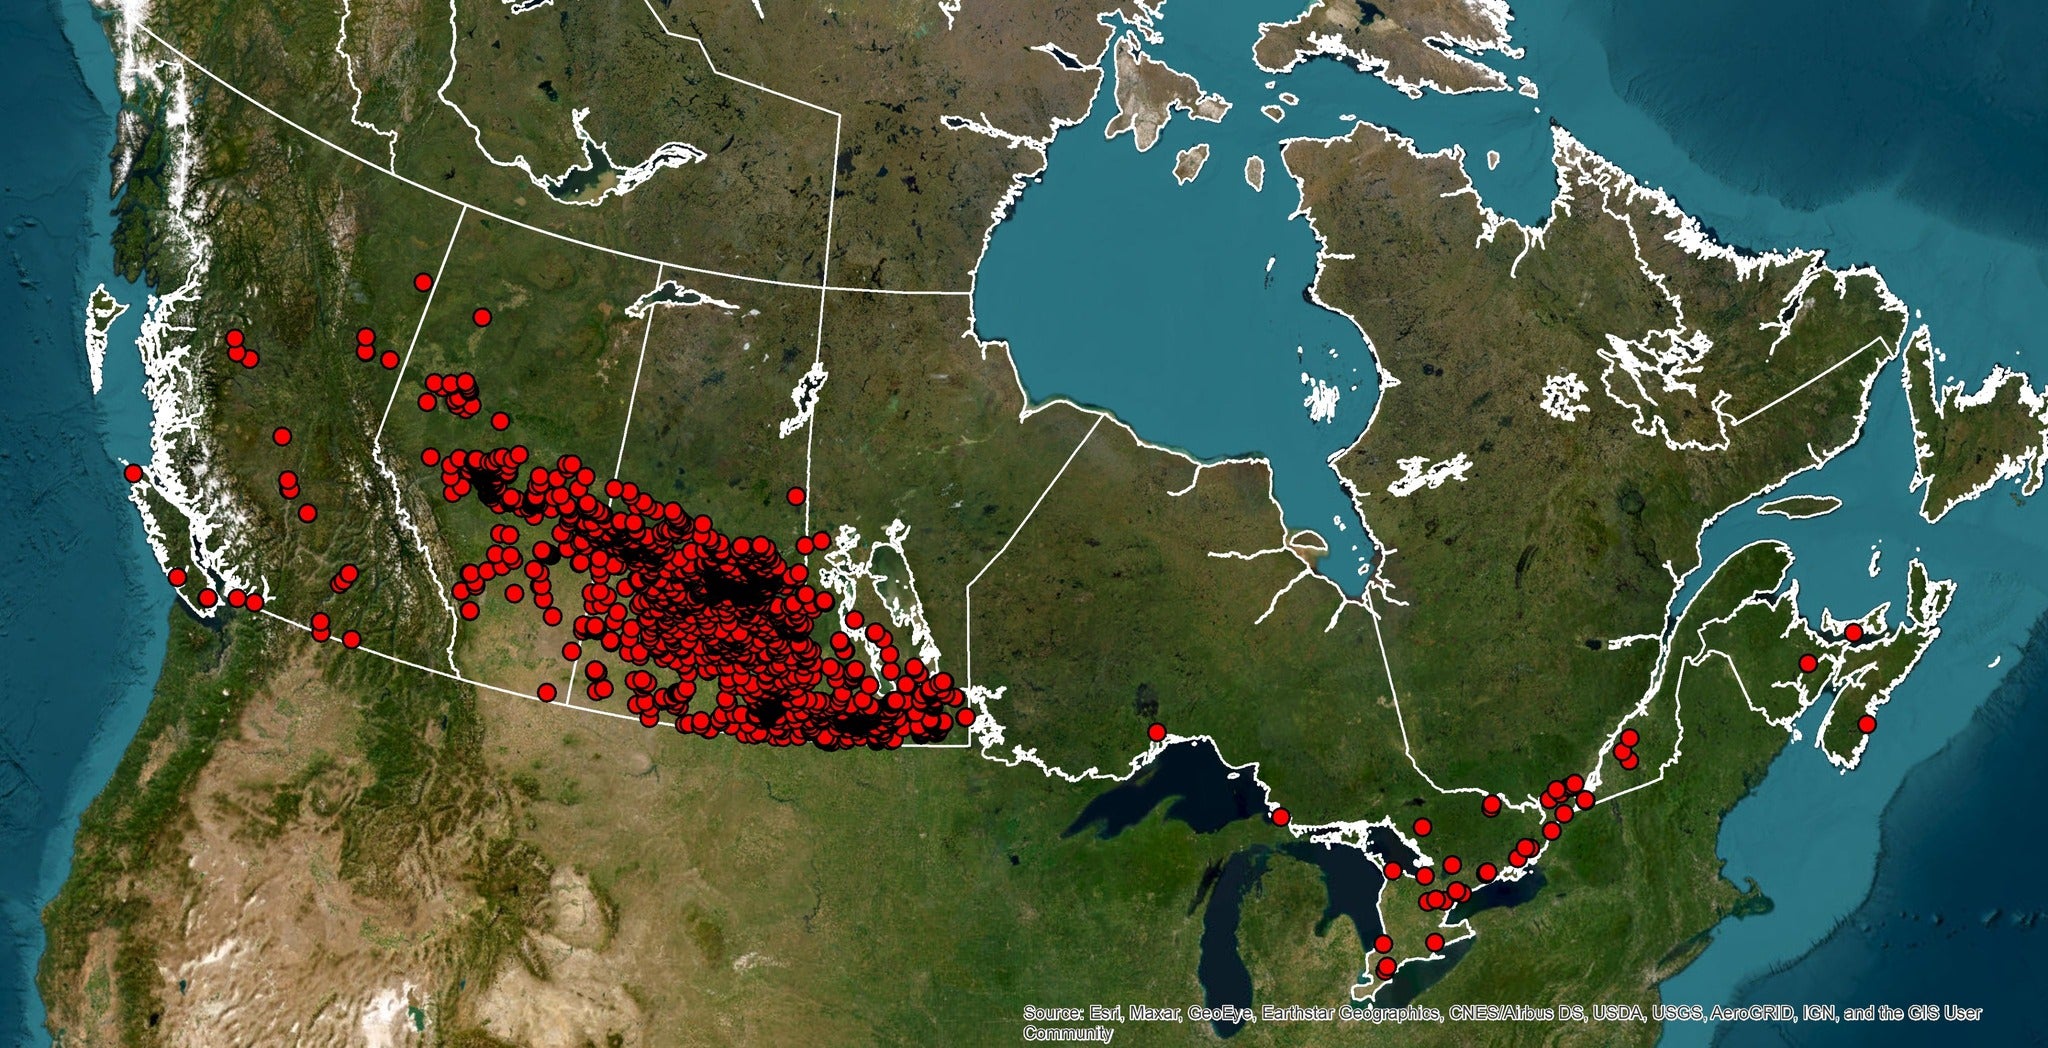 mapa que muestra la invasión de cerdos en las provincias de las praderas de Canadá